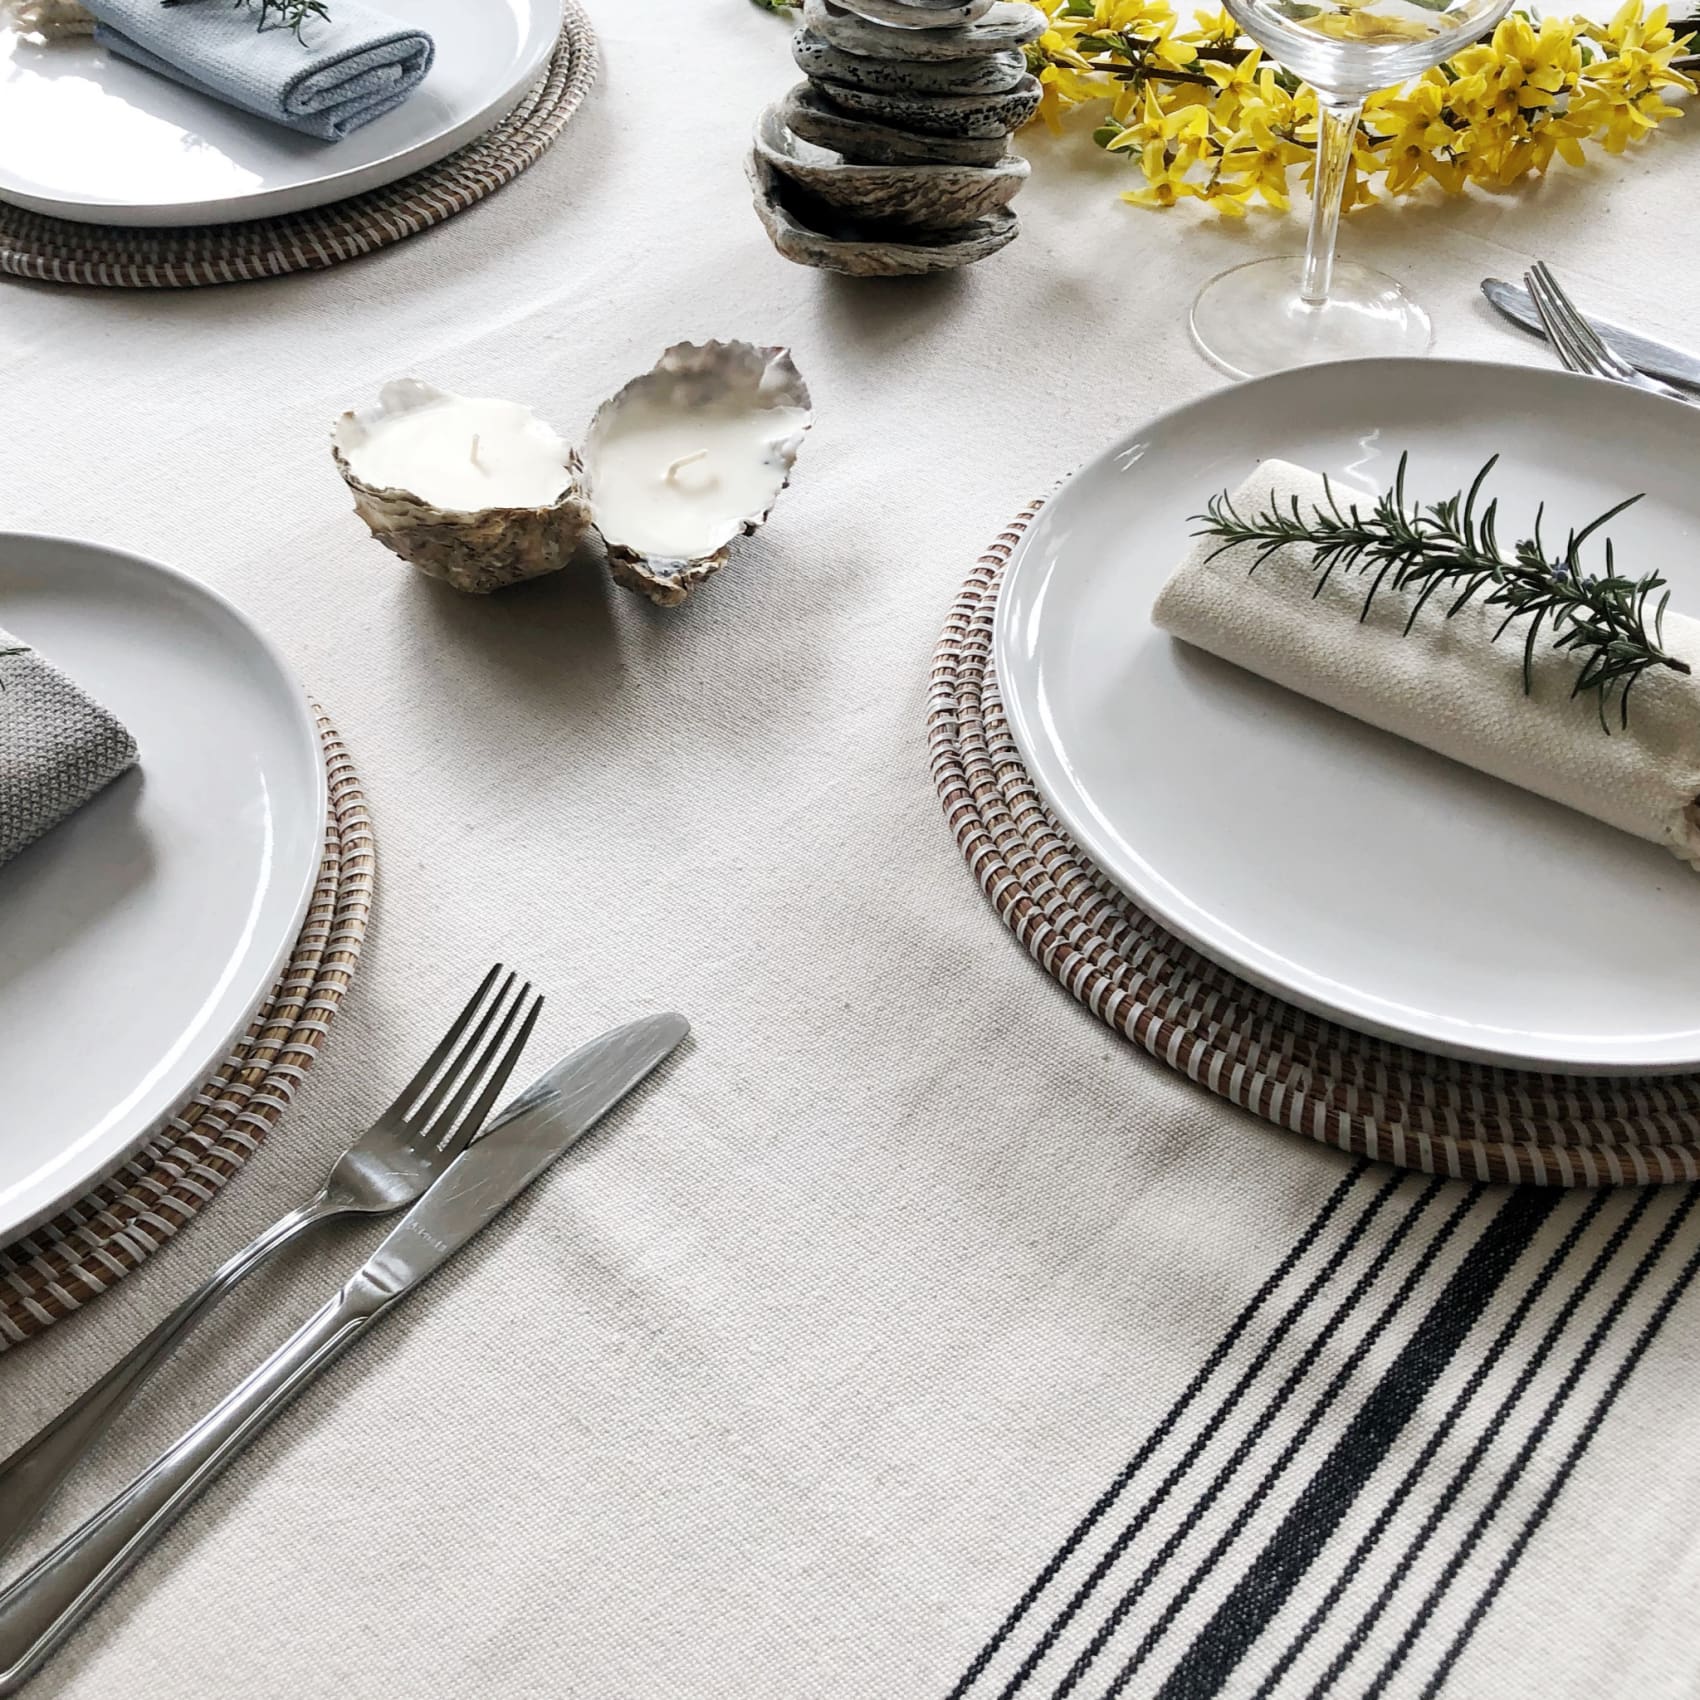 bergama-peshtemal-bathroom-cotton-kitchen-scarf-luks-linen-tableware-table-fork-862.jpg